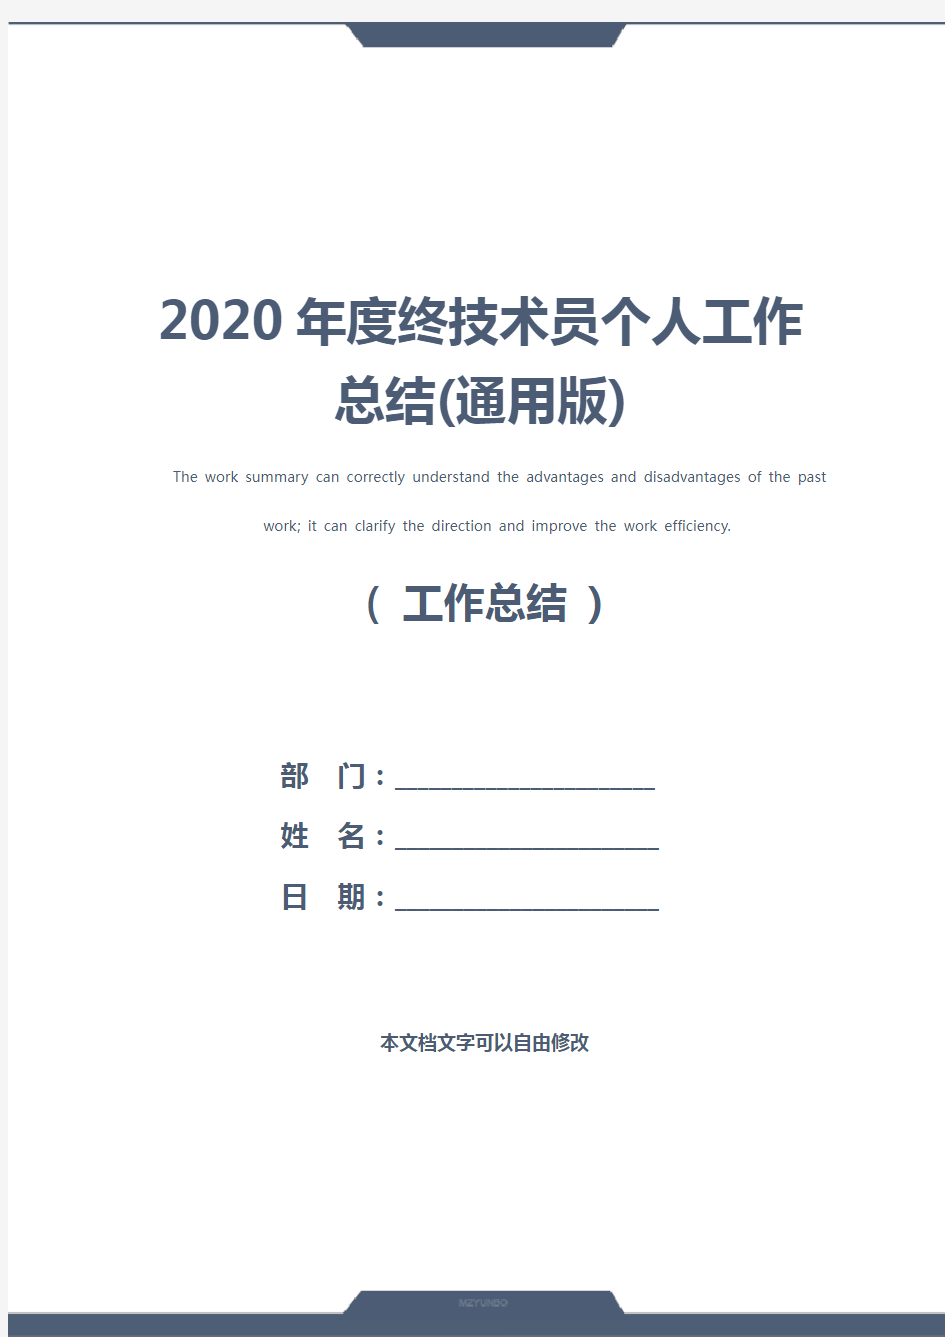 2020年度终技术员个人工作总结(通用版)